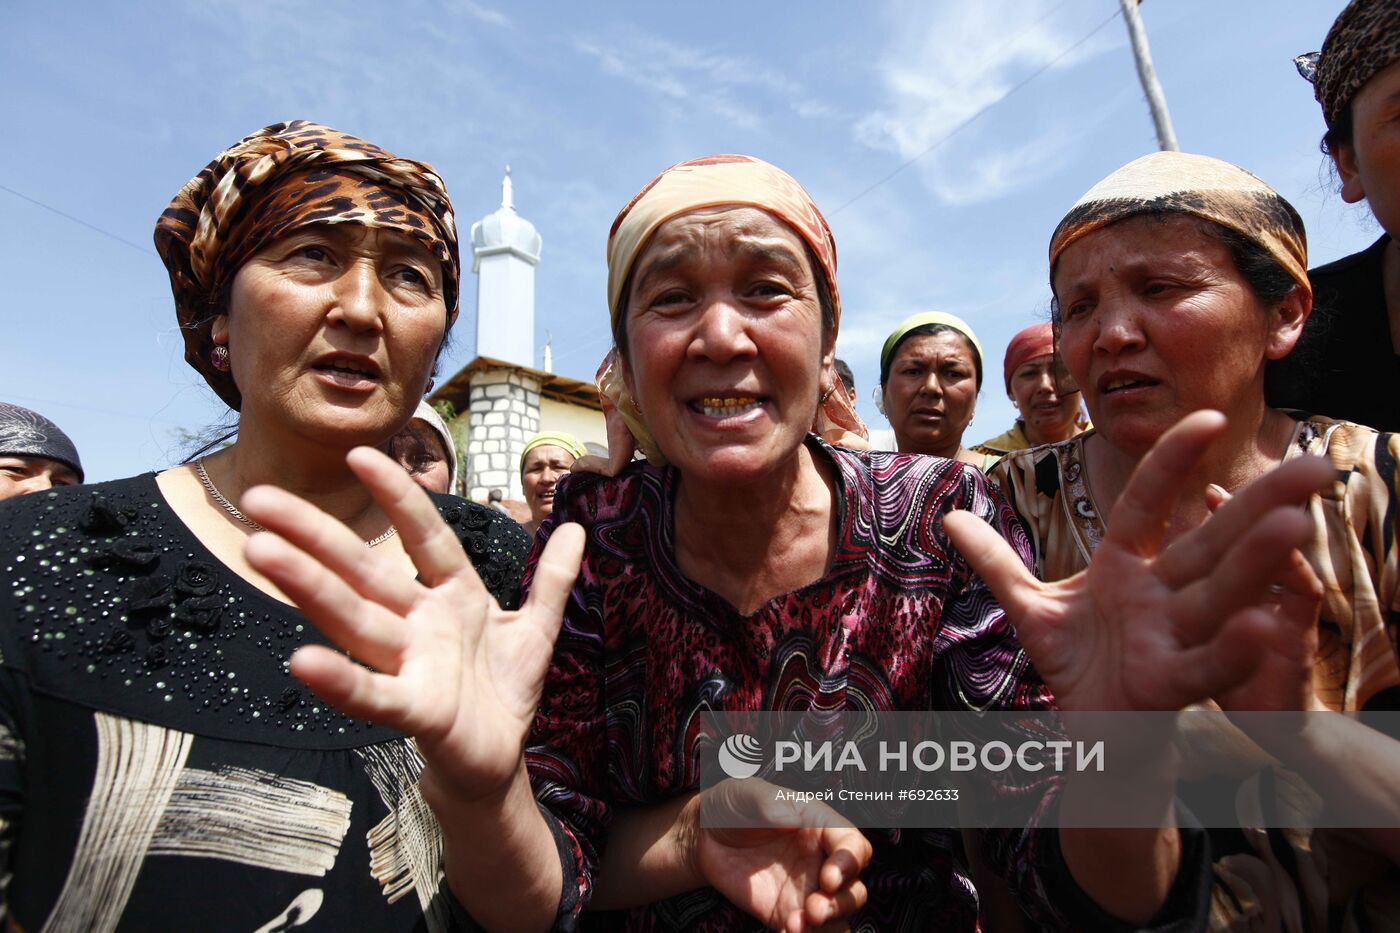 Обстановка на юге Кыргызстана